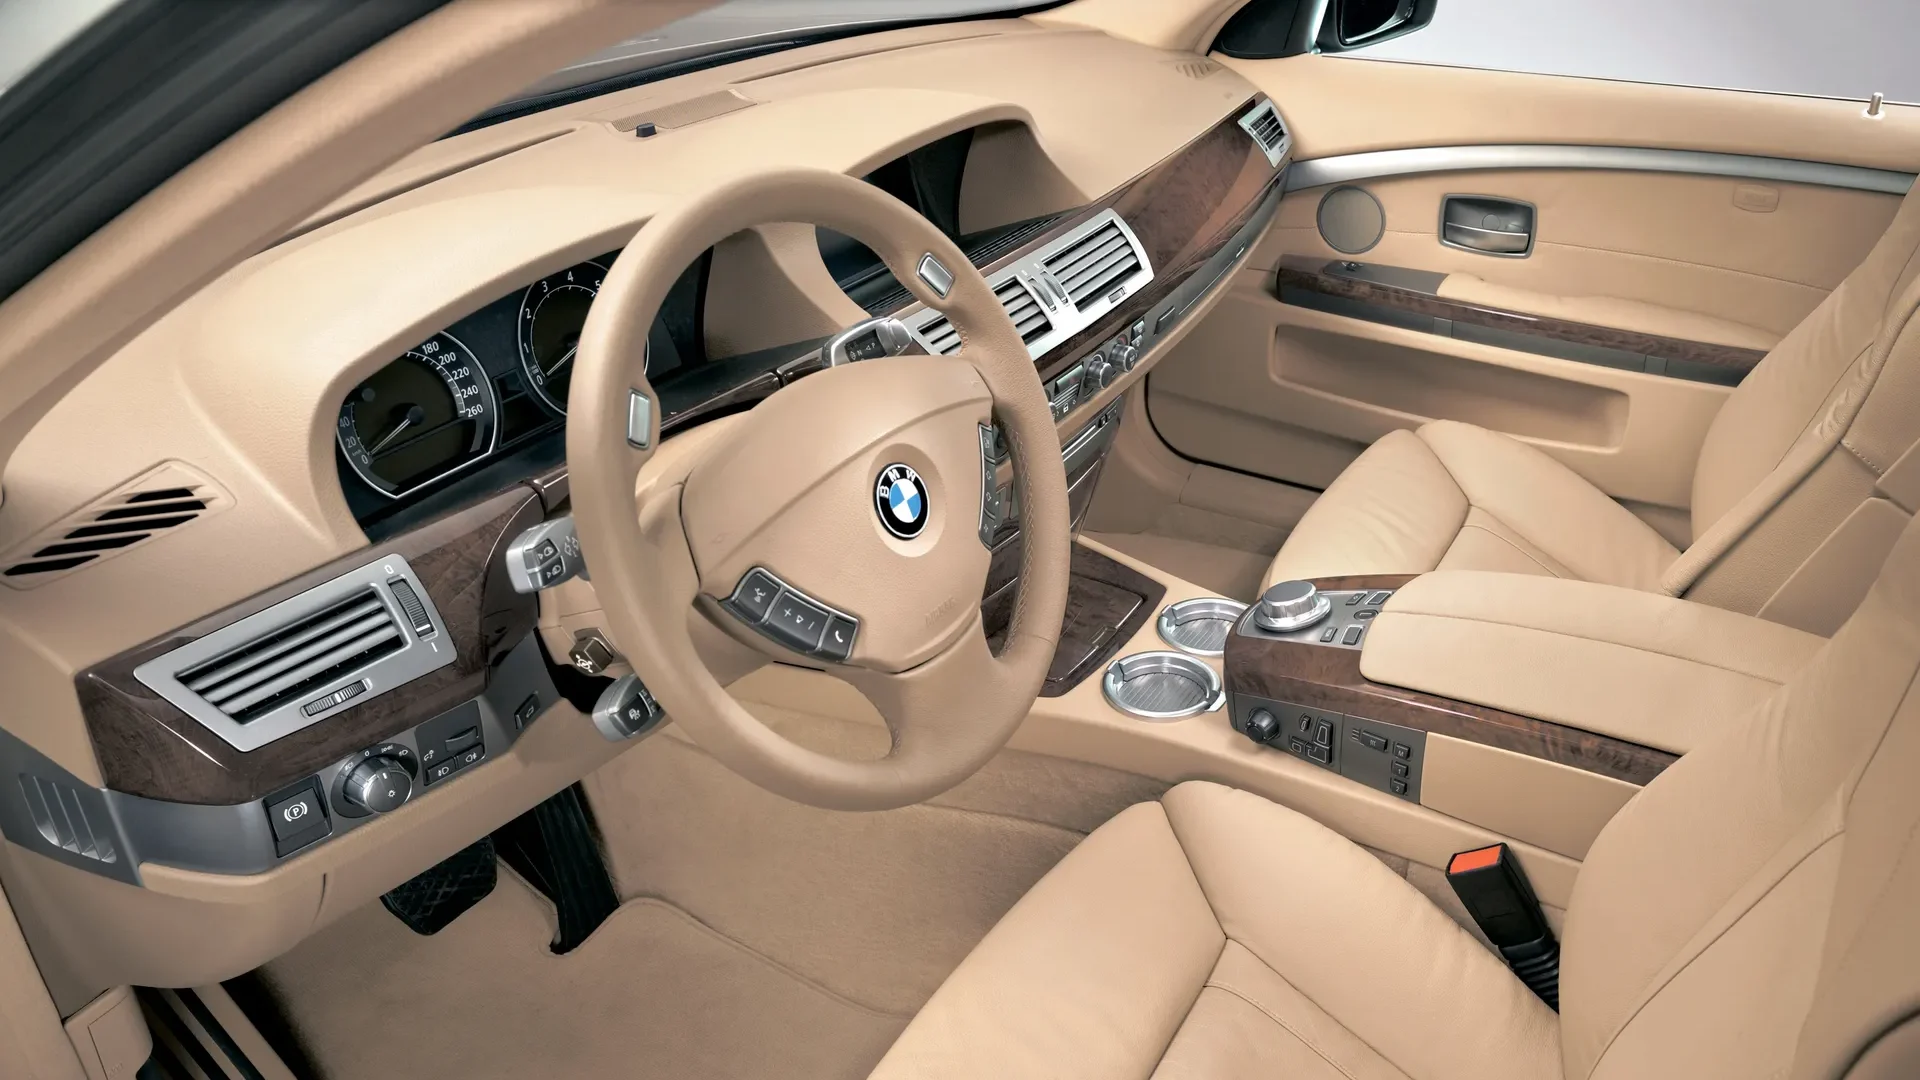 BMW E65 interior